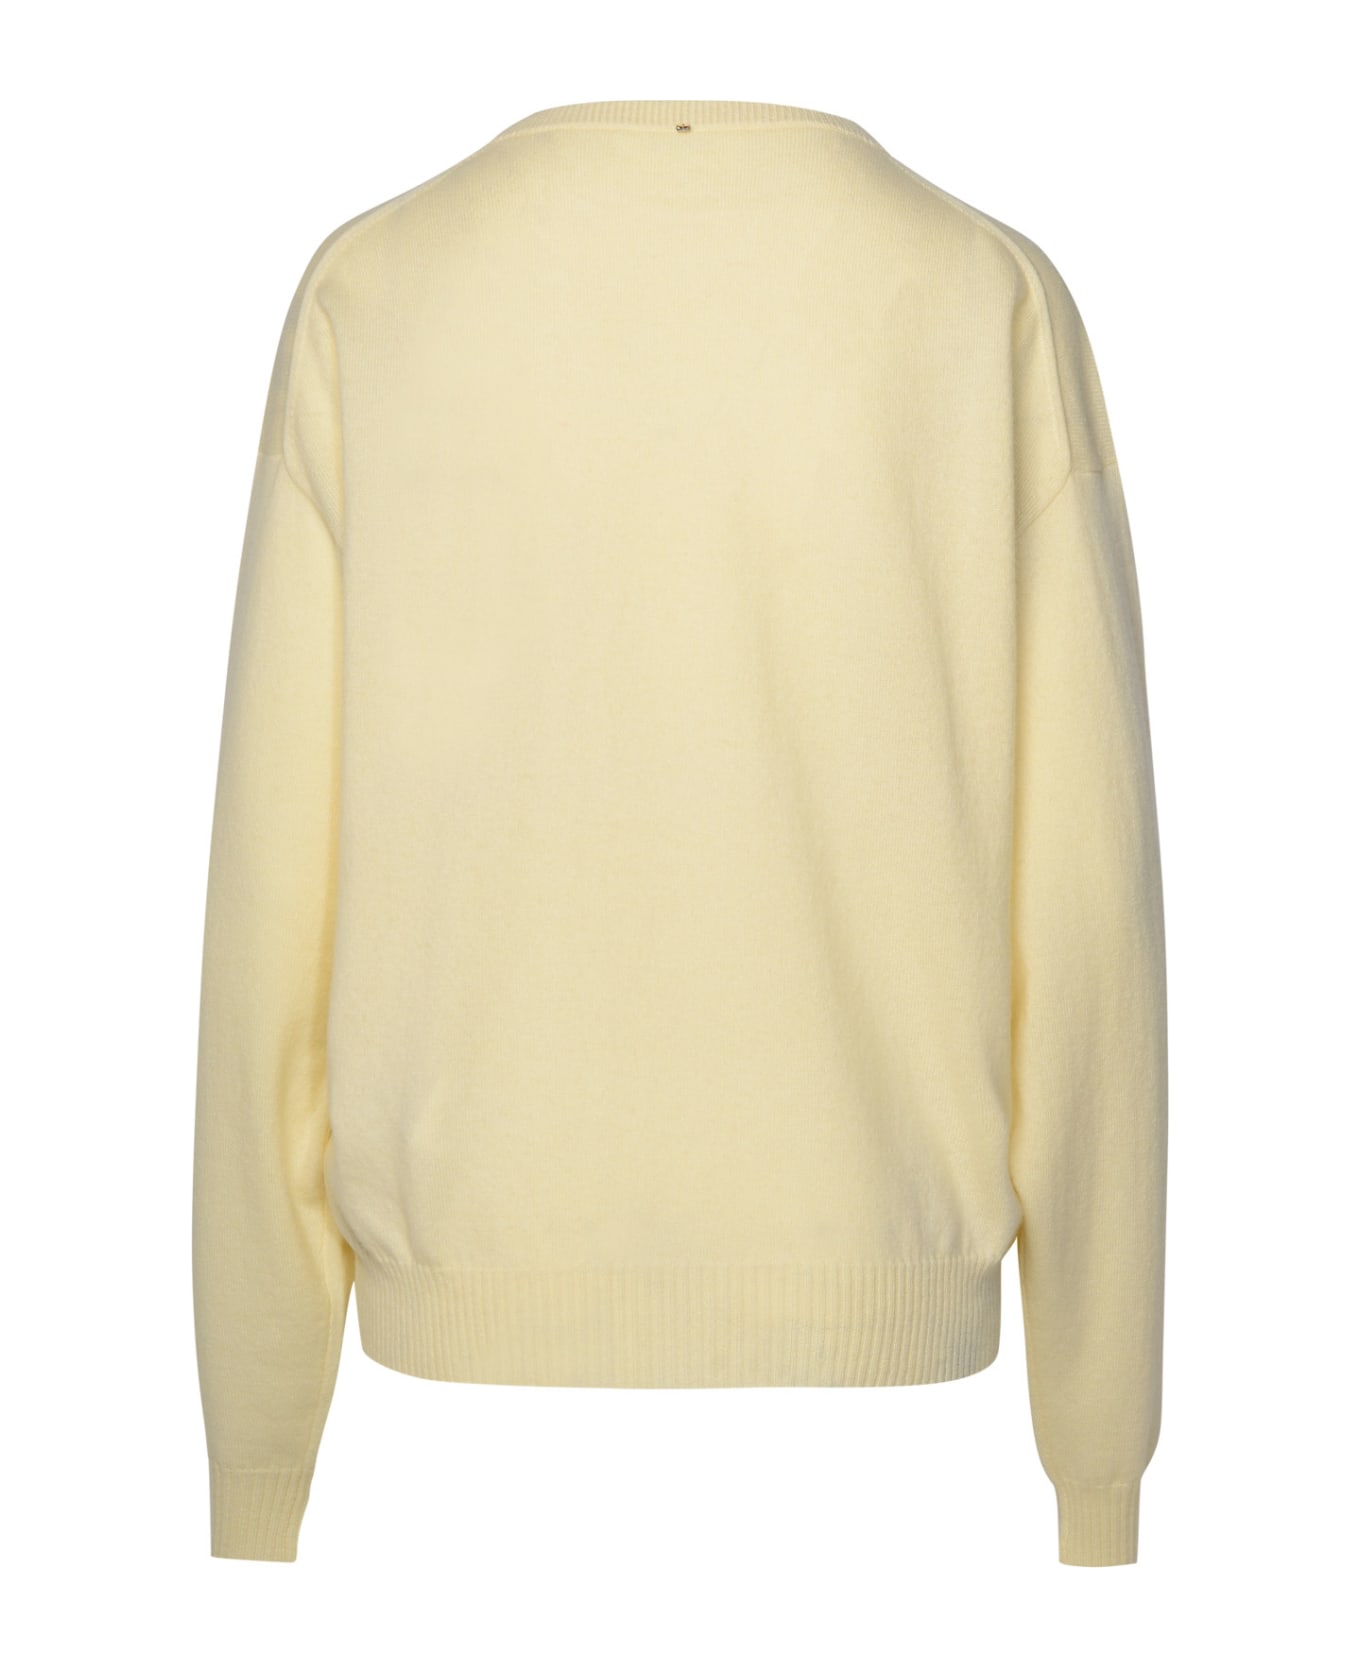 SportMax Ivory Wool Blend Sweater - Cream ニットウェア